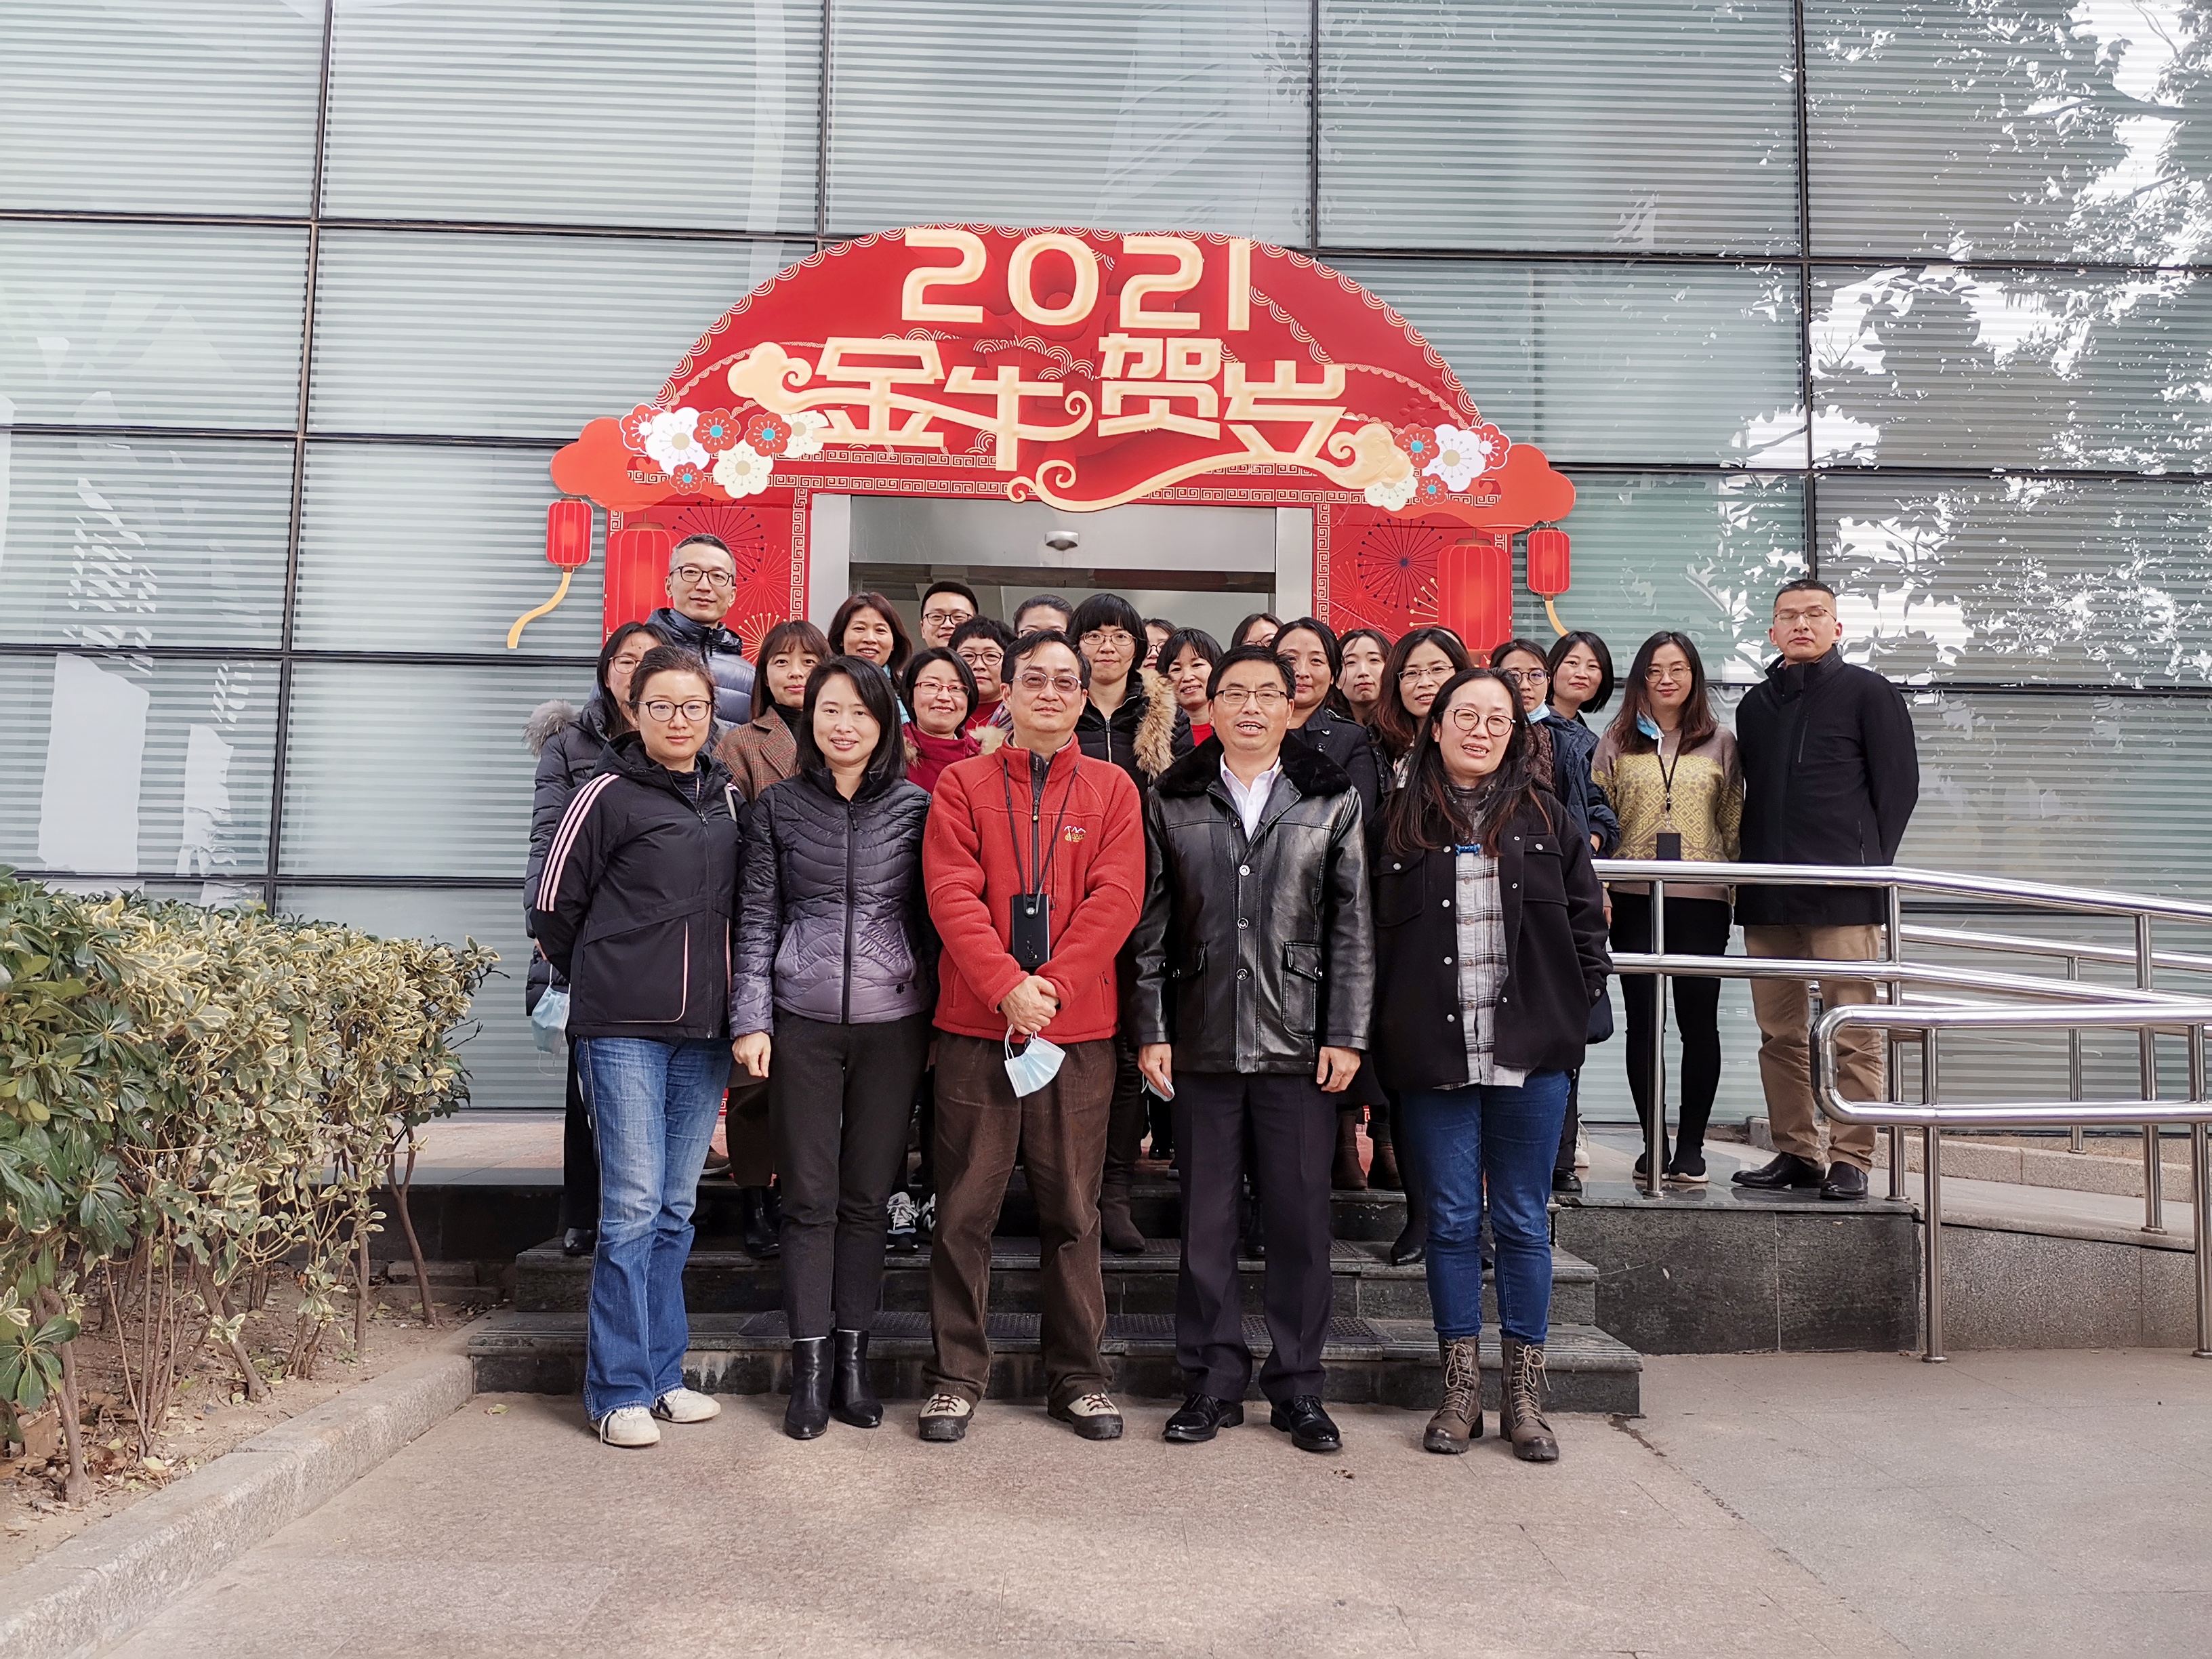 上海市环境科学学会化学品污染物排放毒性鉴别与风险防控专业委员会与国际化学品制造商协会(AICM)学术沙龙成功举办